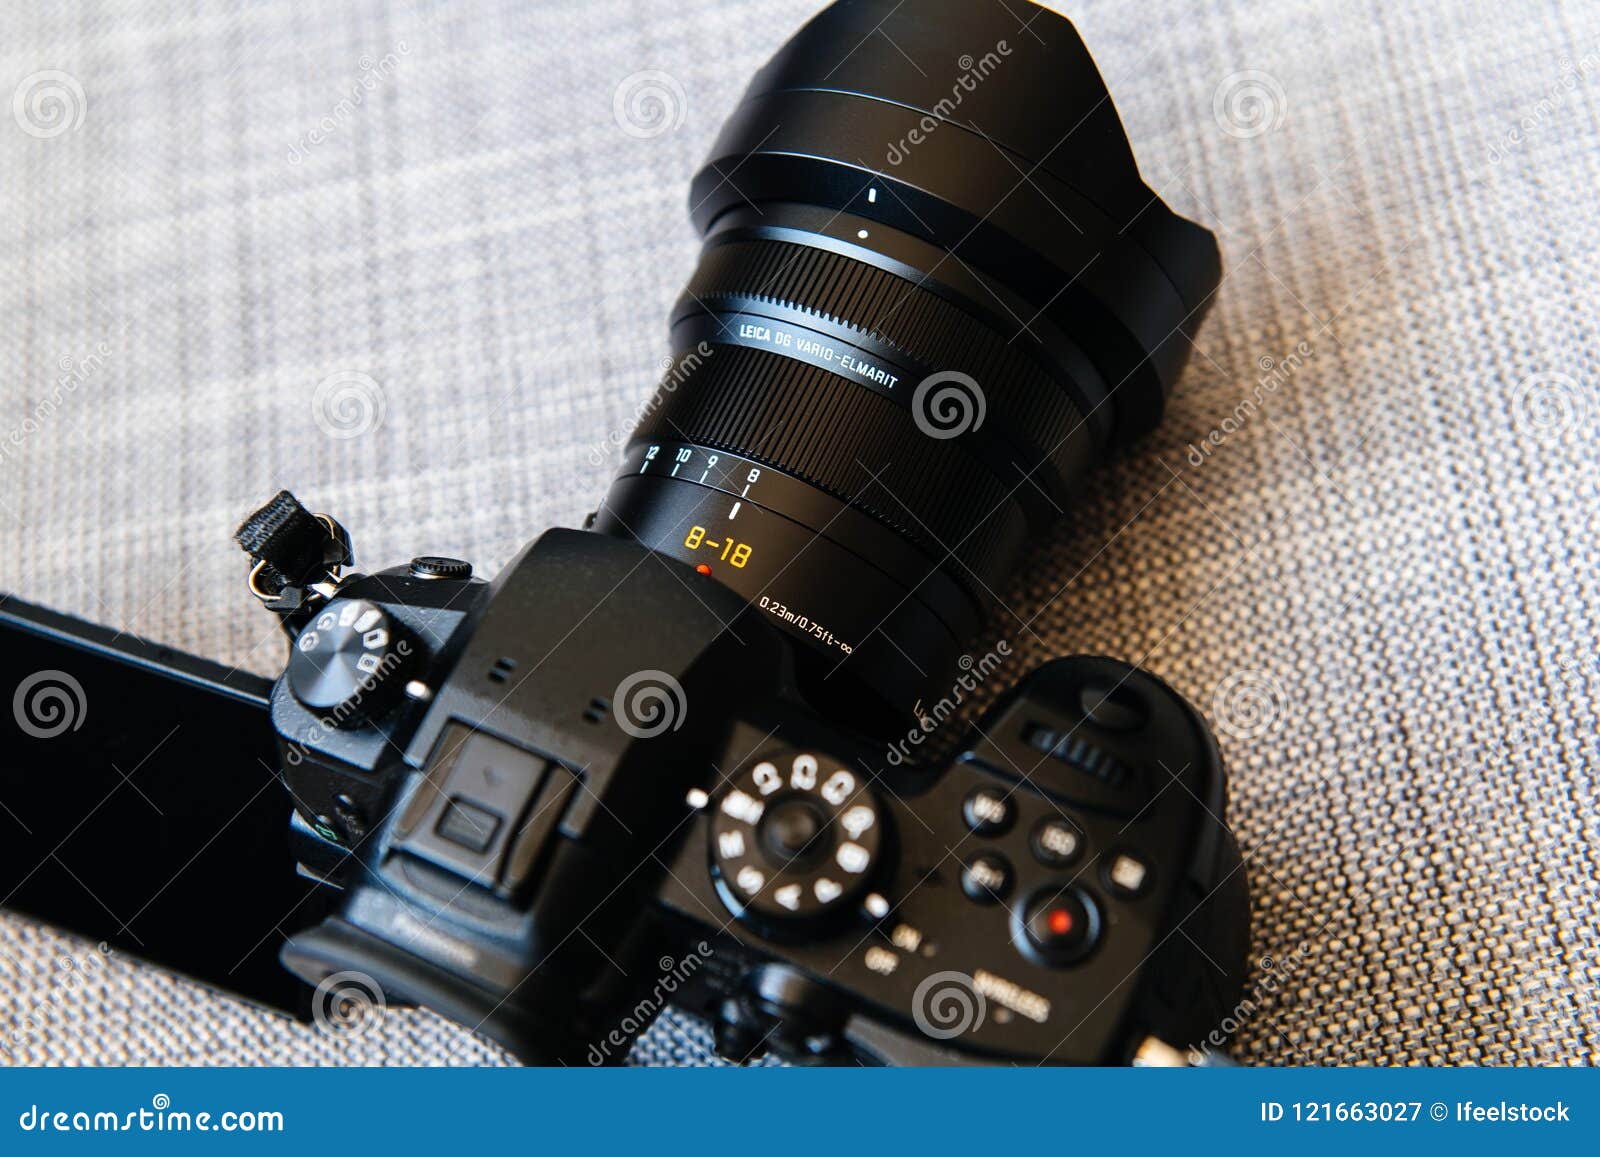 verbinding verbroken Laat je zien vice versa Panasonic Leica DG Vario-Elmarit 8-18mm Lens GH5 Editorial Photography -  Image of photographic, background: 121663027